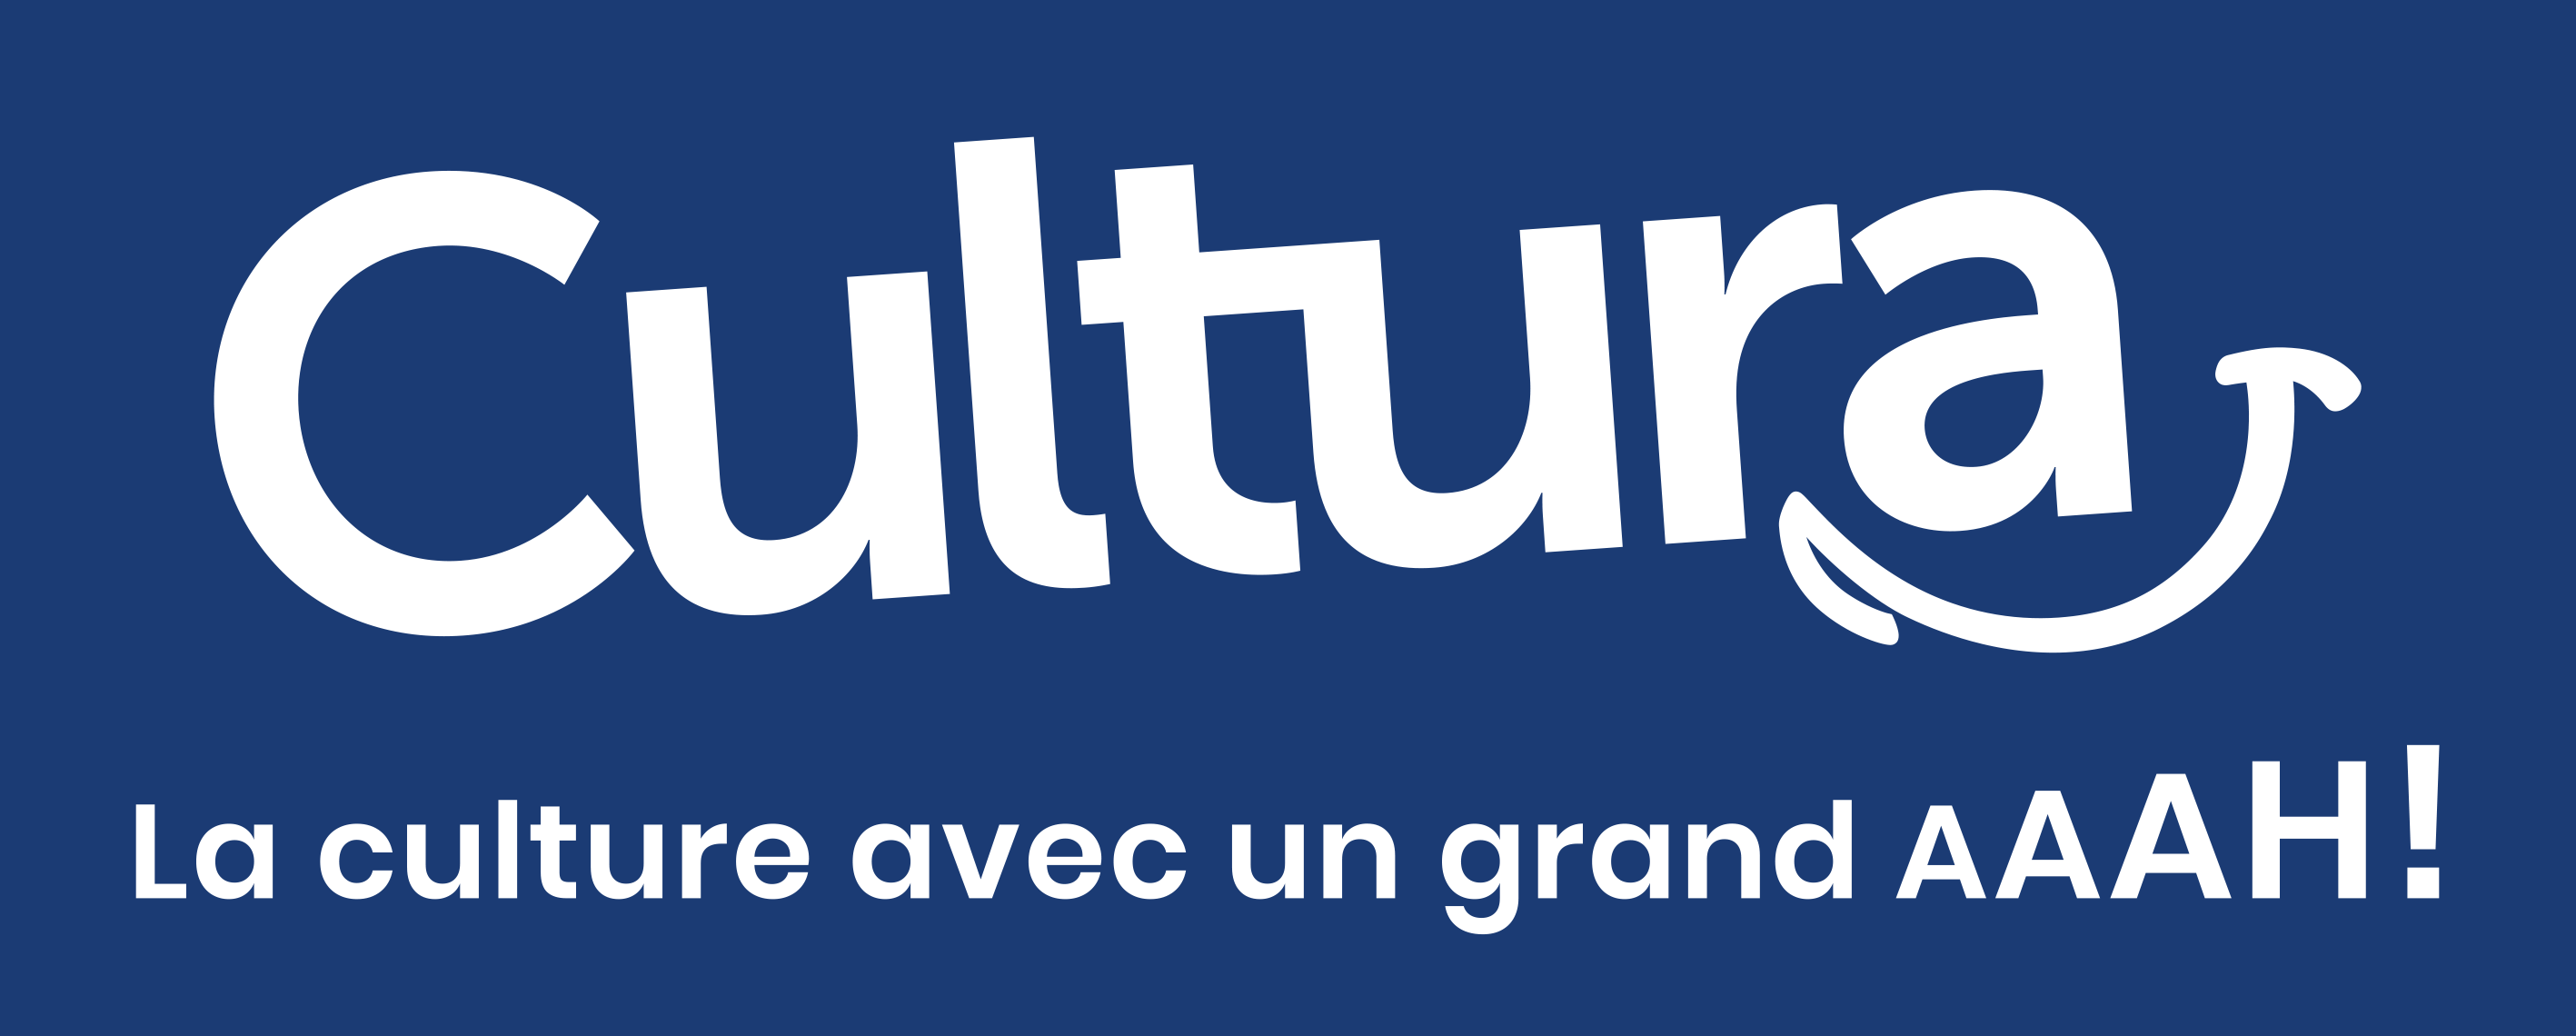 cultura-abc-kidz-bordeaux.png